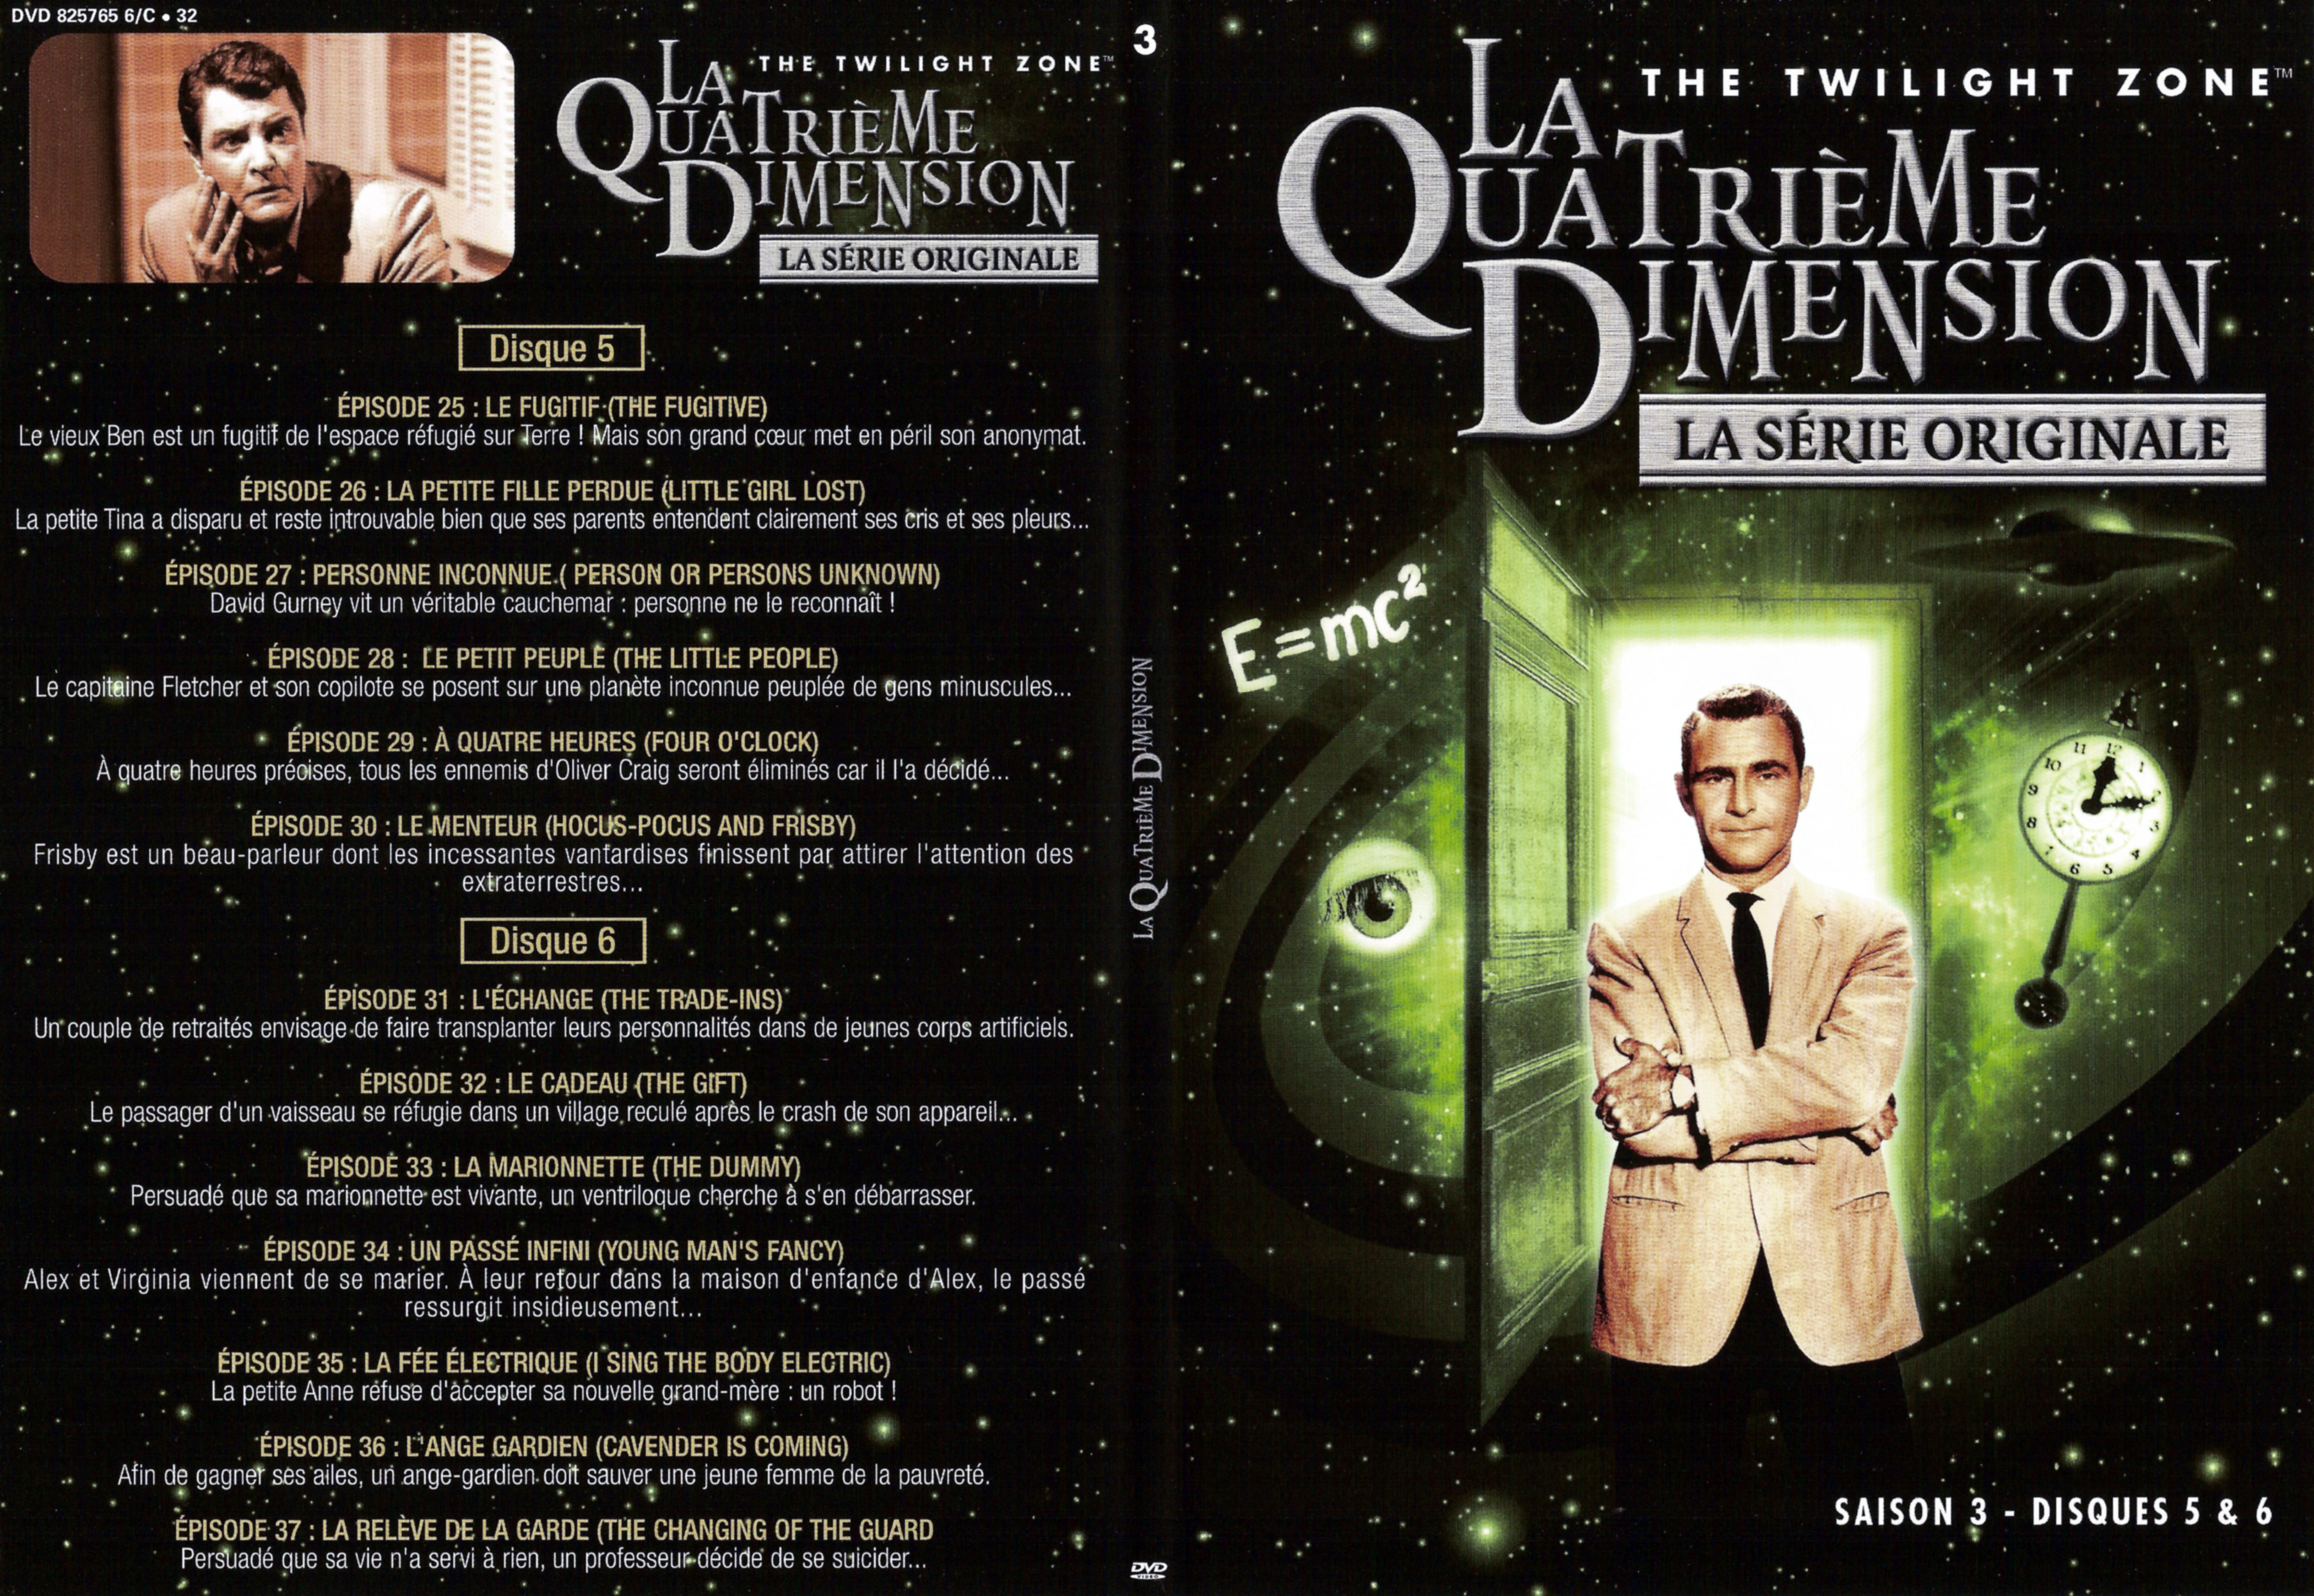 Jaquette DVD La quatrieme dimension Saison 3 vol 3